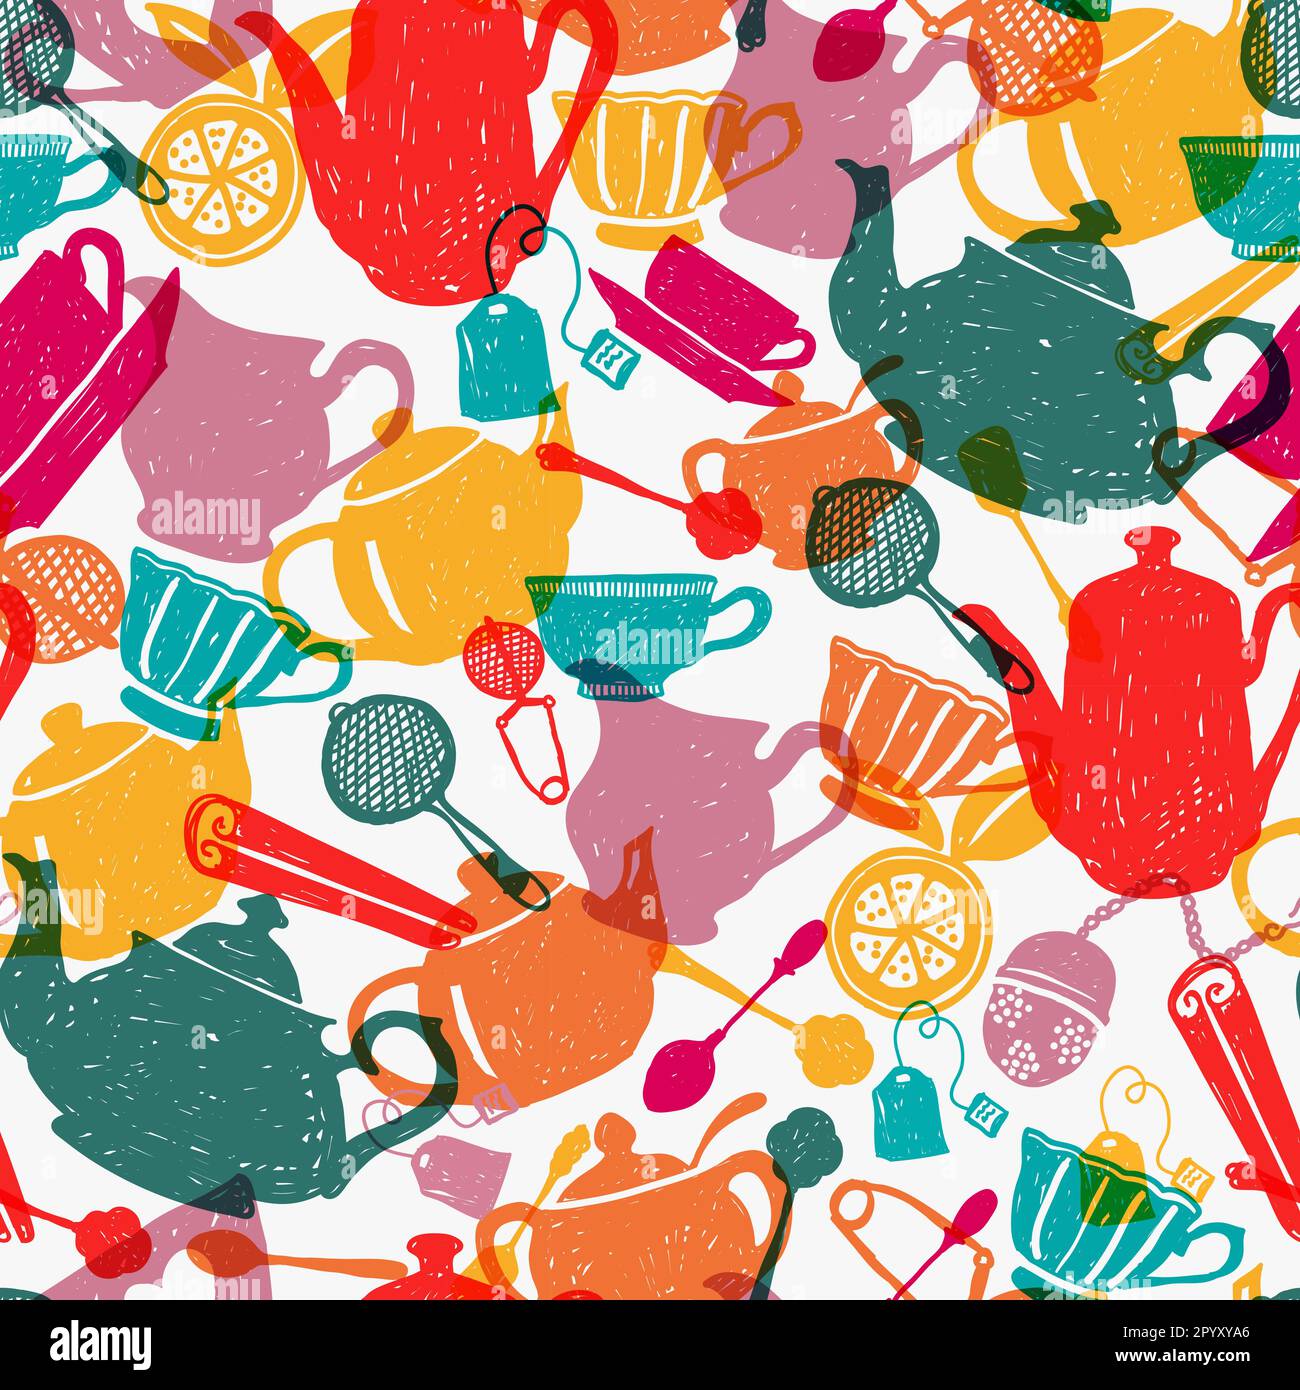 Tea Time mehrfarbiges, nahtloses Muster-Vektordesign. Farbenfrohe Küchenelemente im handgezeichneten Stil auf weißem Hintergrund. Zur Verwendung für Stoff, Dekoration, Wal Stock Vektor